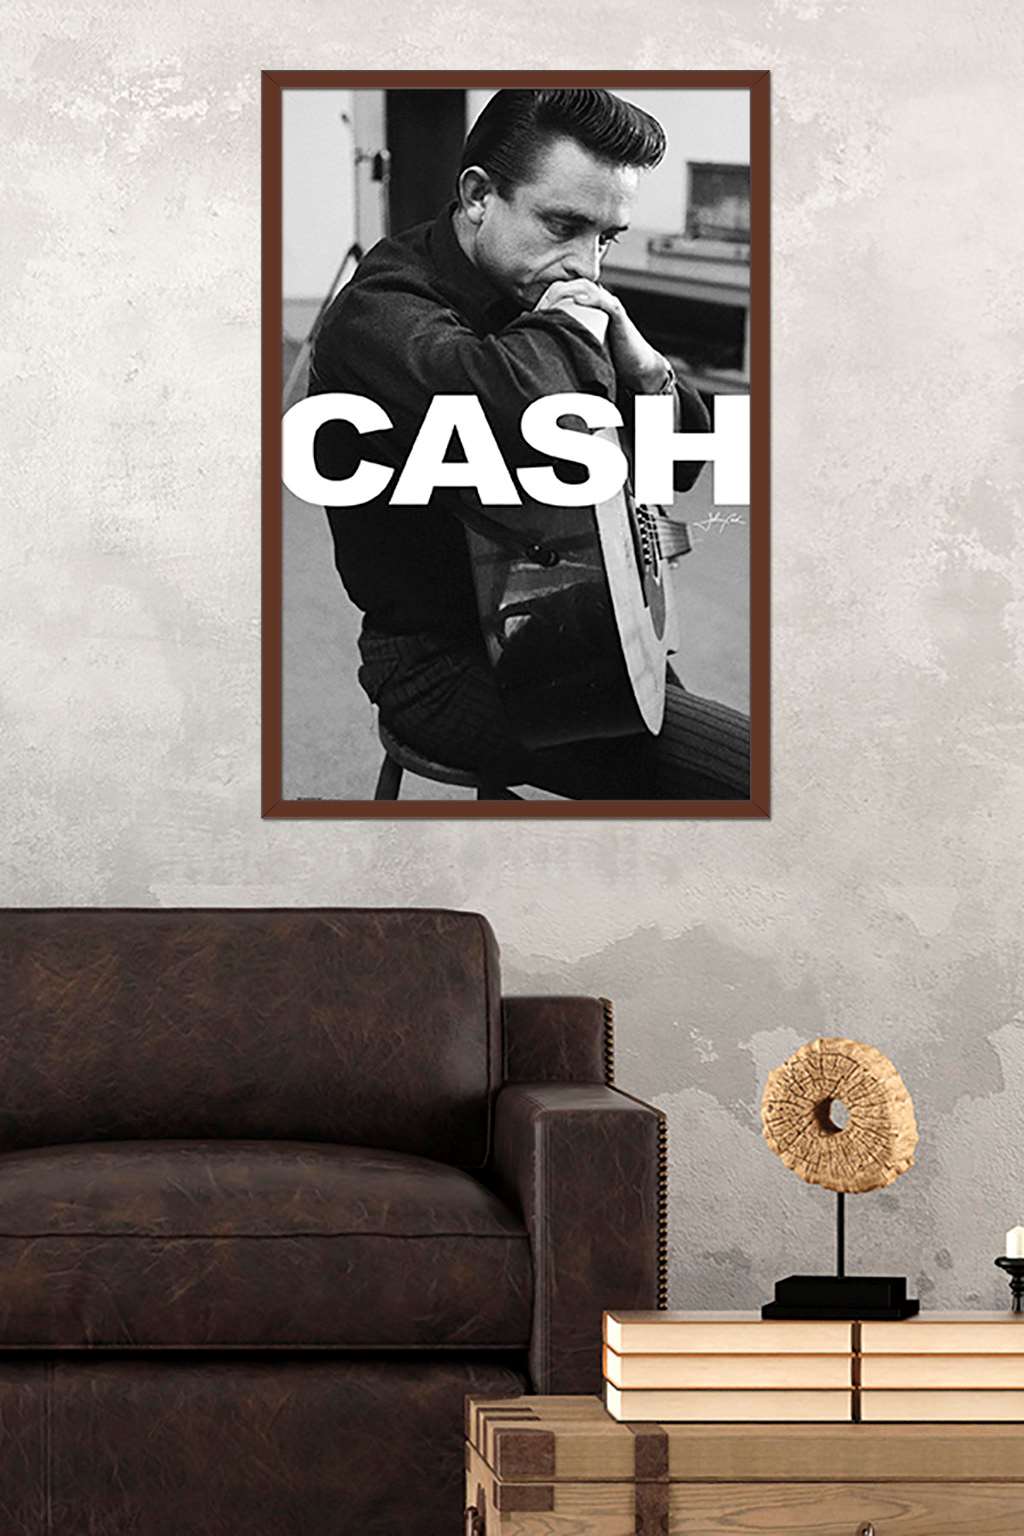 Johnny Cash - Cash Poster - image 2 of 2